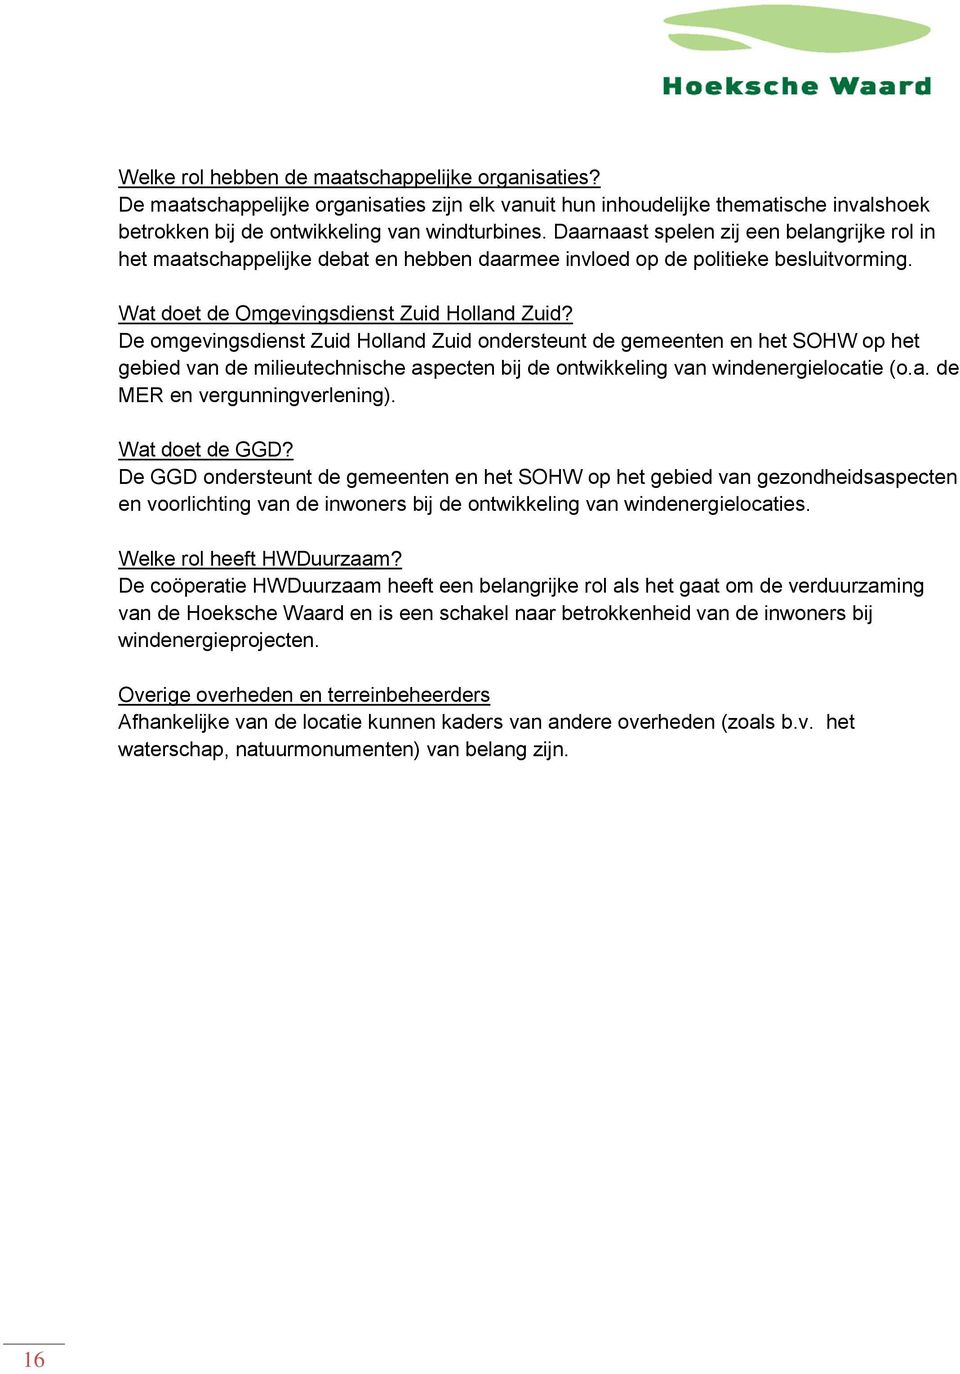 De omgevingsdienst Zuid Holland Zuid ondersteunt de gemeenten en het SOHW op het gebied van de milieutechnische aspecten bij de ontwikkeling van windenergielocatie (o.a. de MER en vergunningverlening).